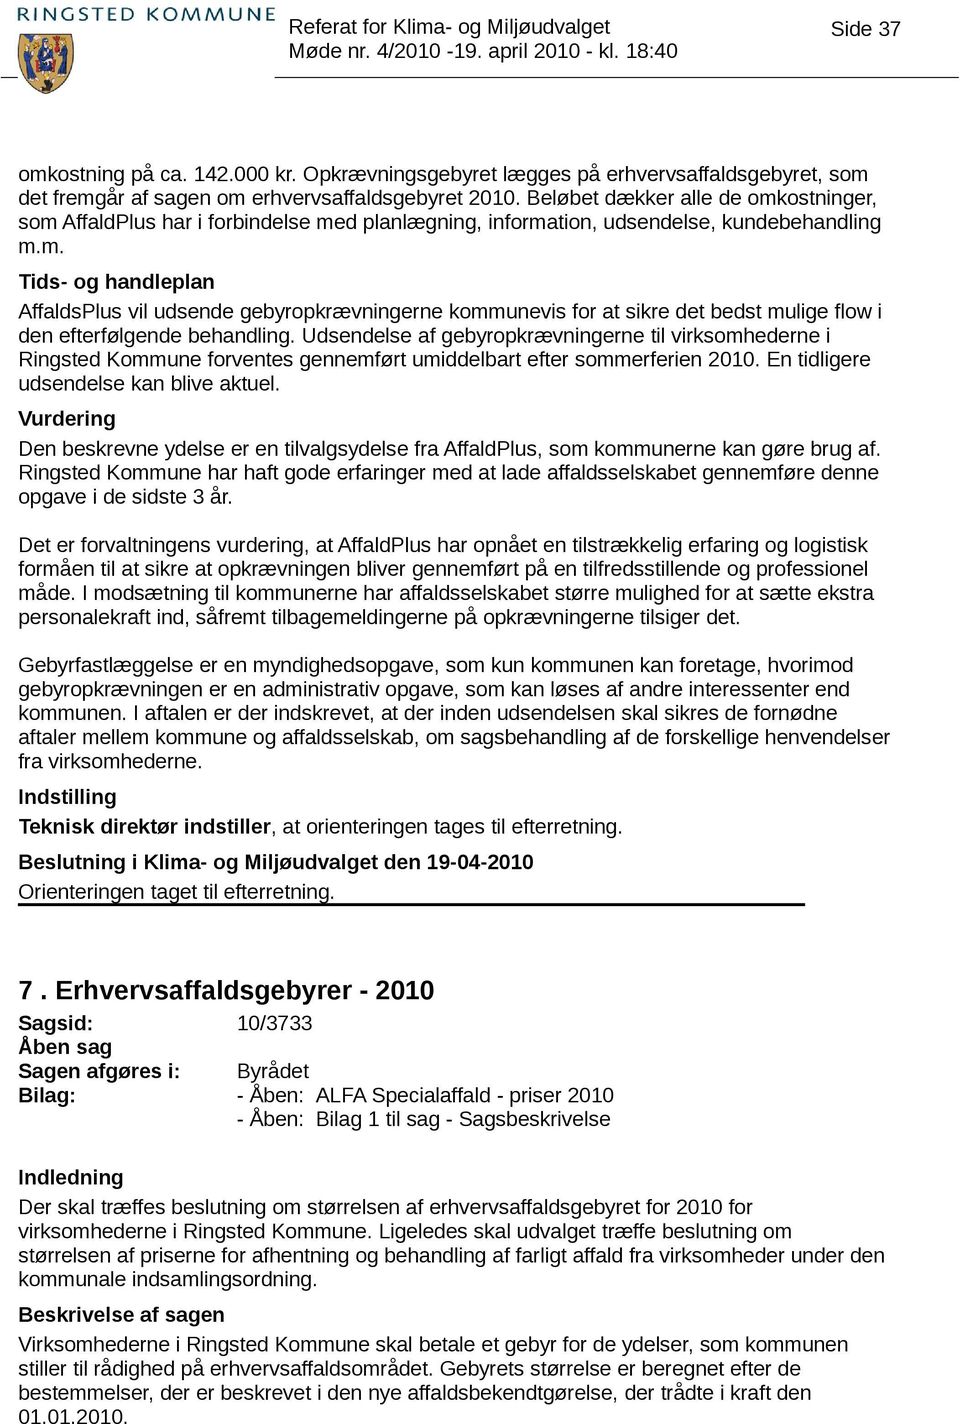 Udsendelse af gebyropkrævningerne til virksomhederne i Ringsted Kommune forventes gennemført umiddelbart efter sommerferien 2010. En tidligere udsendelse kan blive aktuel.